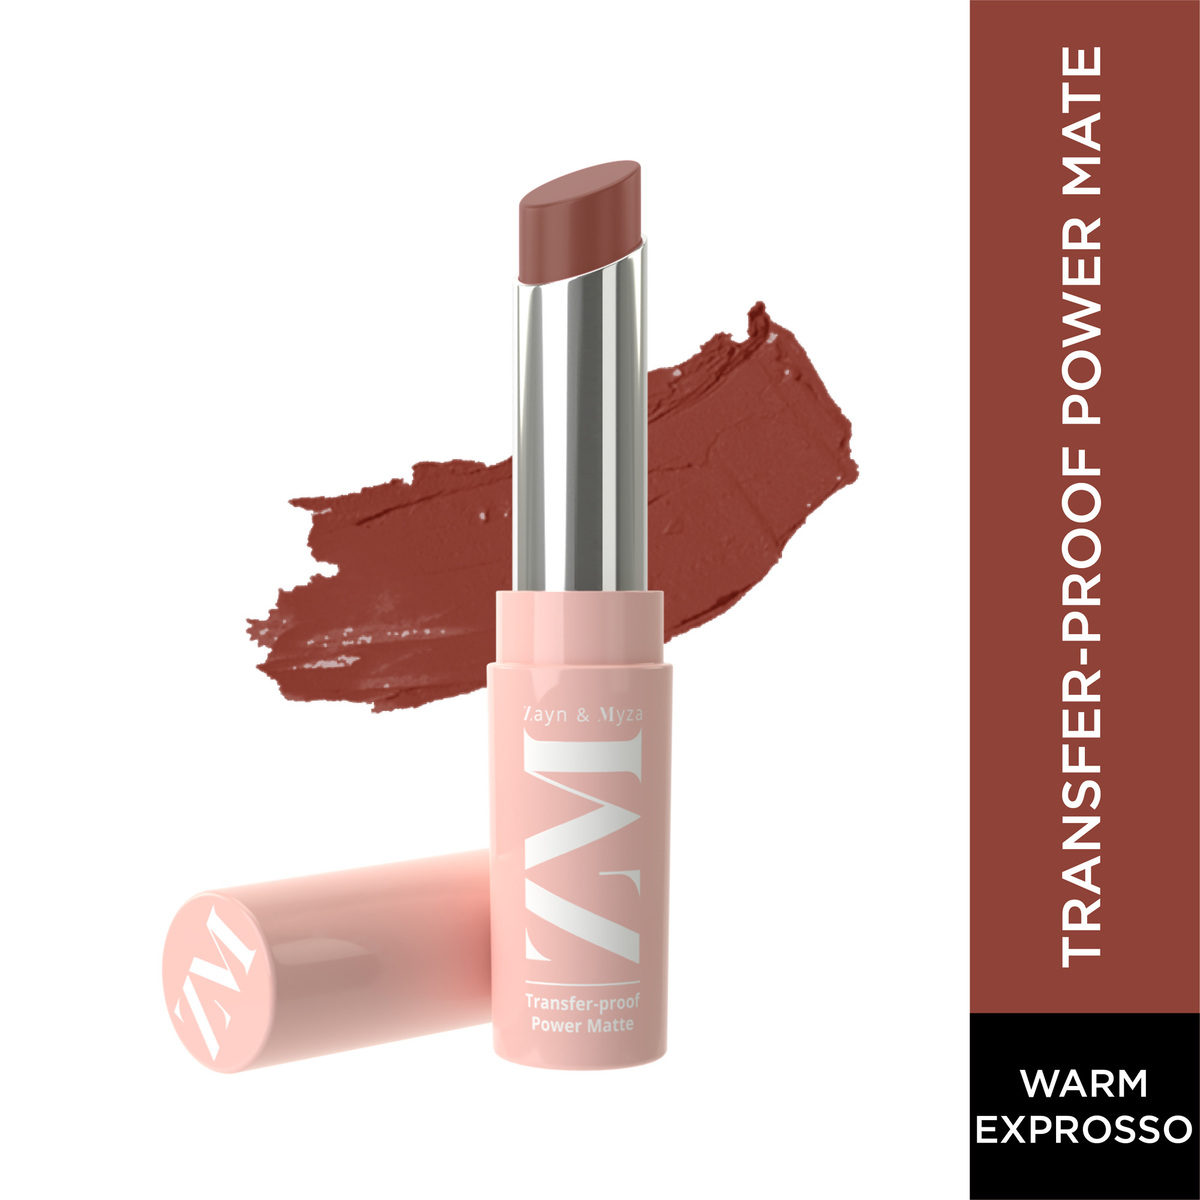 Zayn & Myza Transfer-Proof Power Matte Lipstick, Warm Espresso, 3.2 g